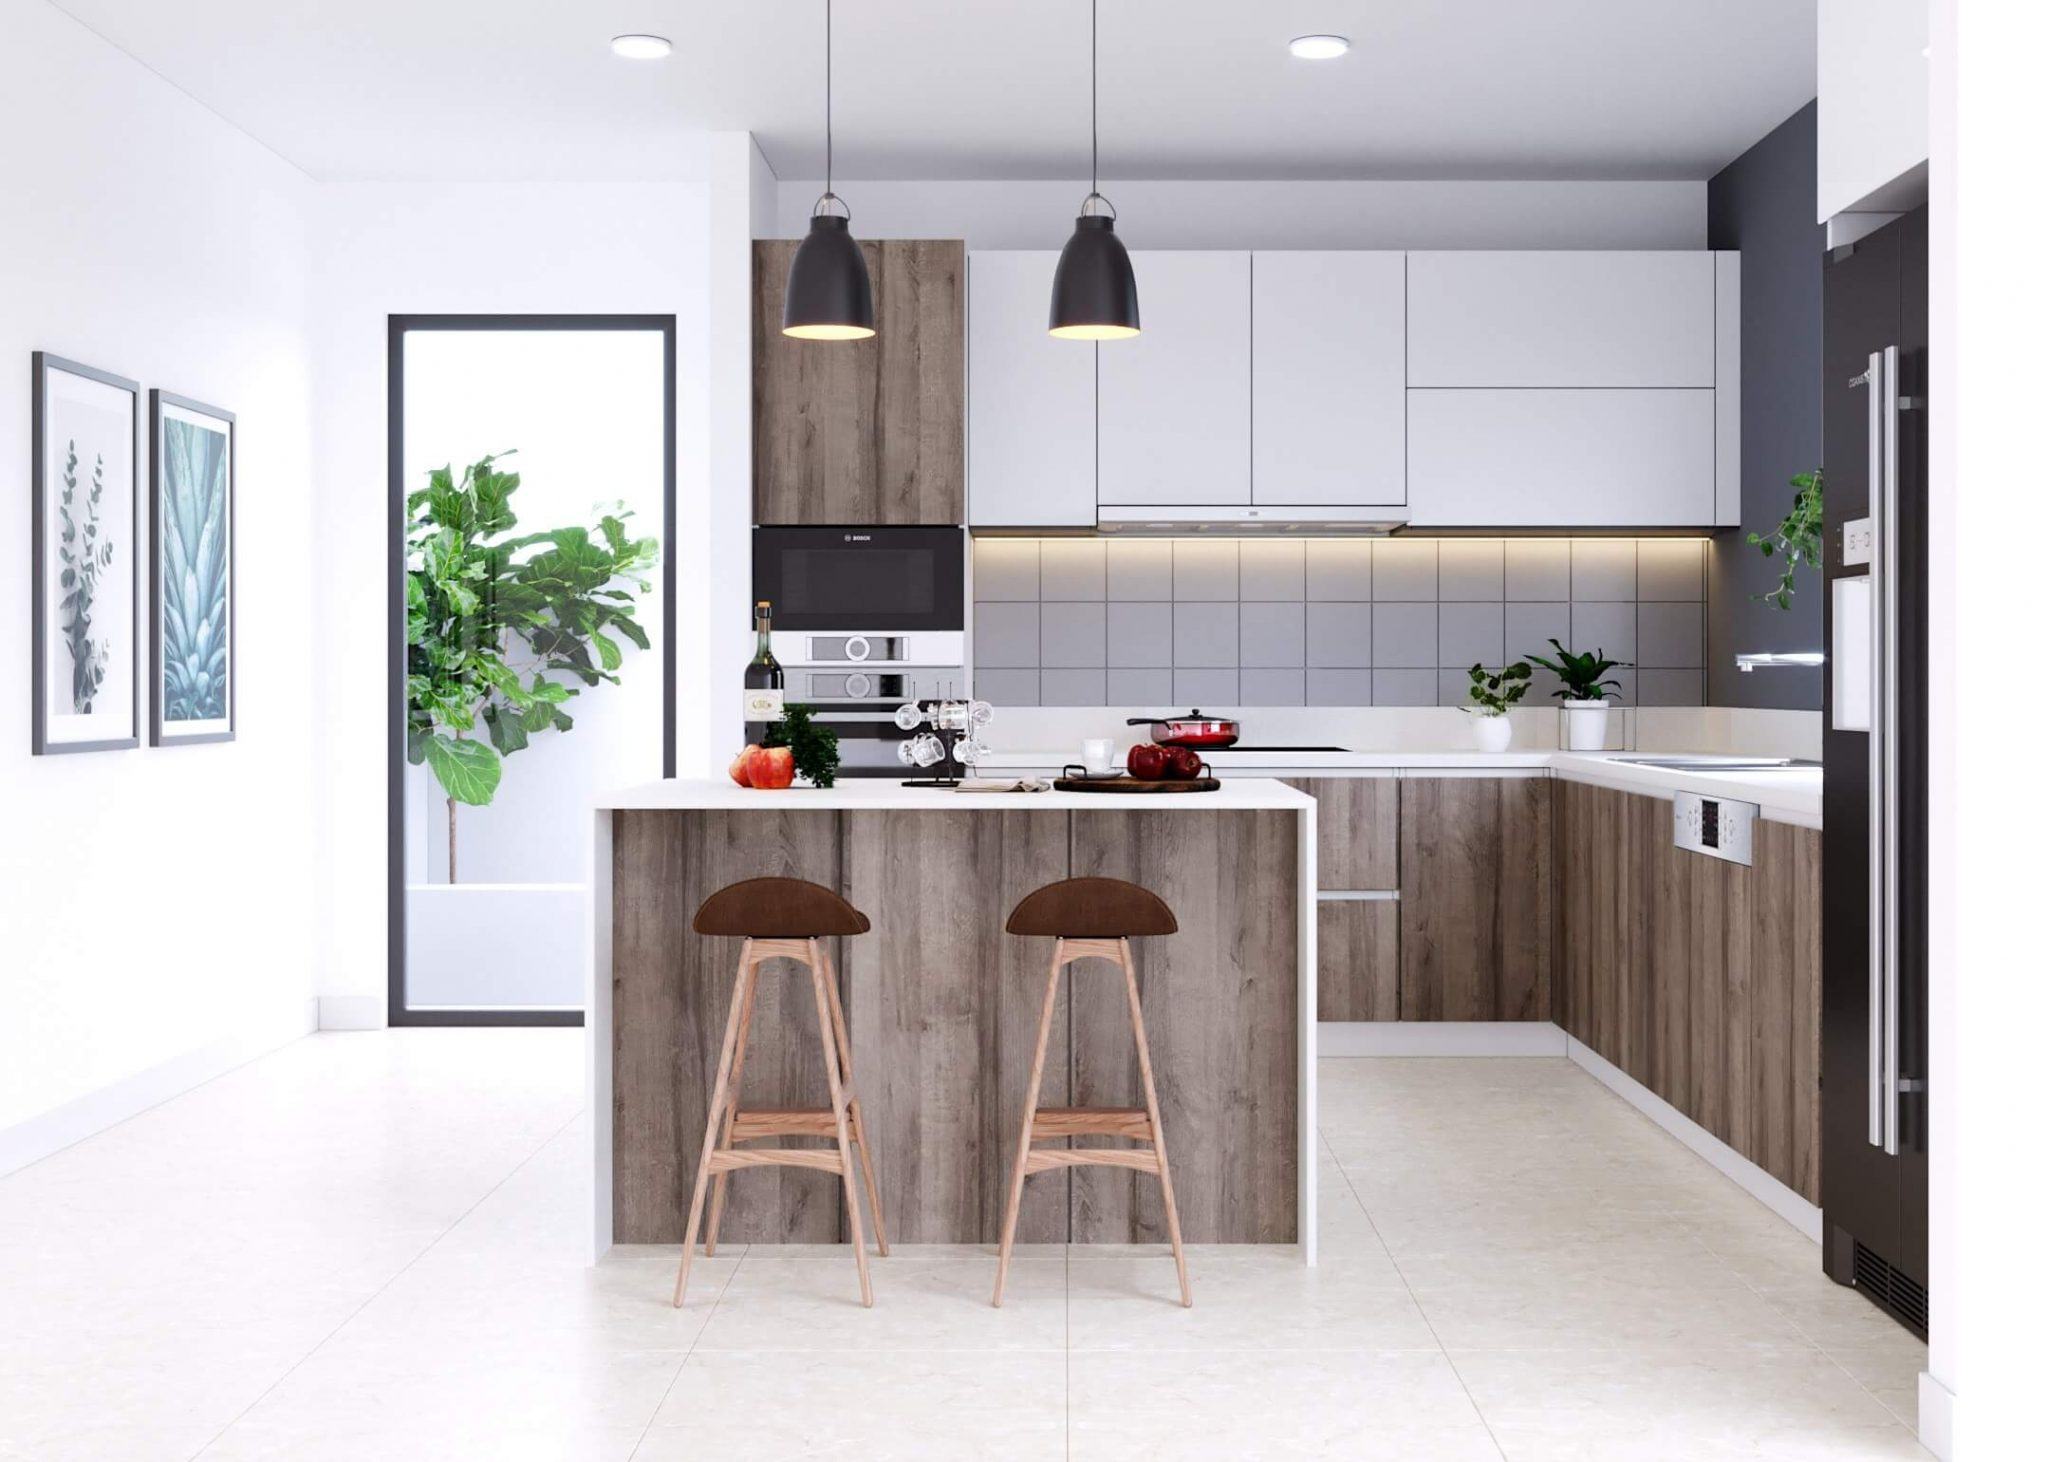 Thiết kế nội thất phòng bếp là điều đặc biệt quan trọng để tạo ra không gian ấm cúng và tiện nghi cho gia đình. Không nên bỏ qua cơ hội tham khảo các thiết kế nội thất phòng bếp sáng tạo và ấn tượng nhất, giúp bạn tối ưu không gian và tạo ra phong cách riêng cho ngôi nhà của bạn.